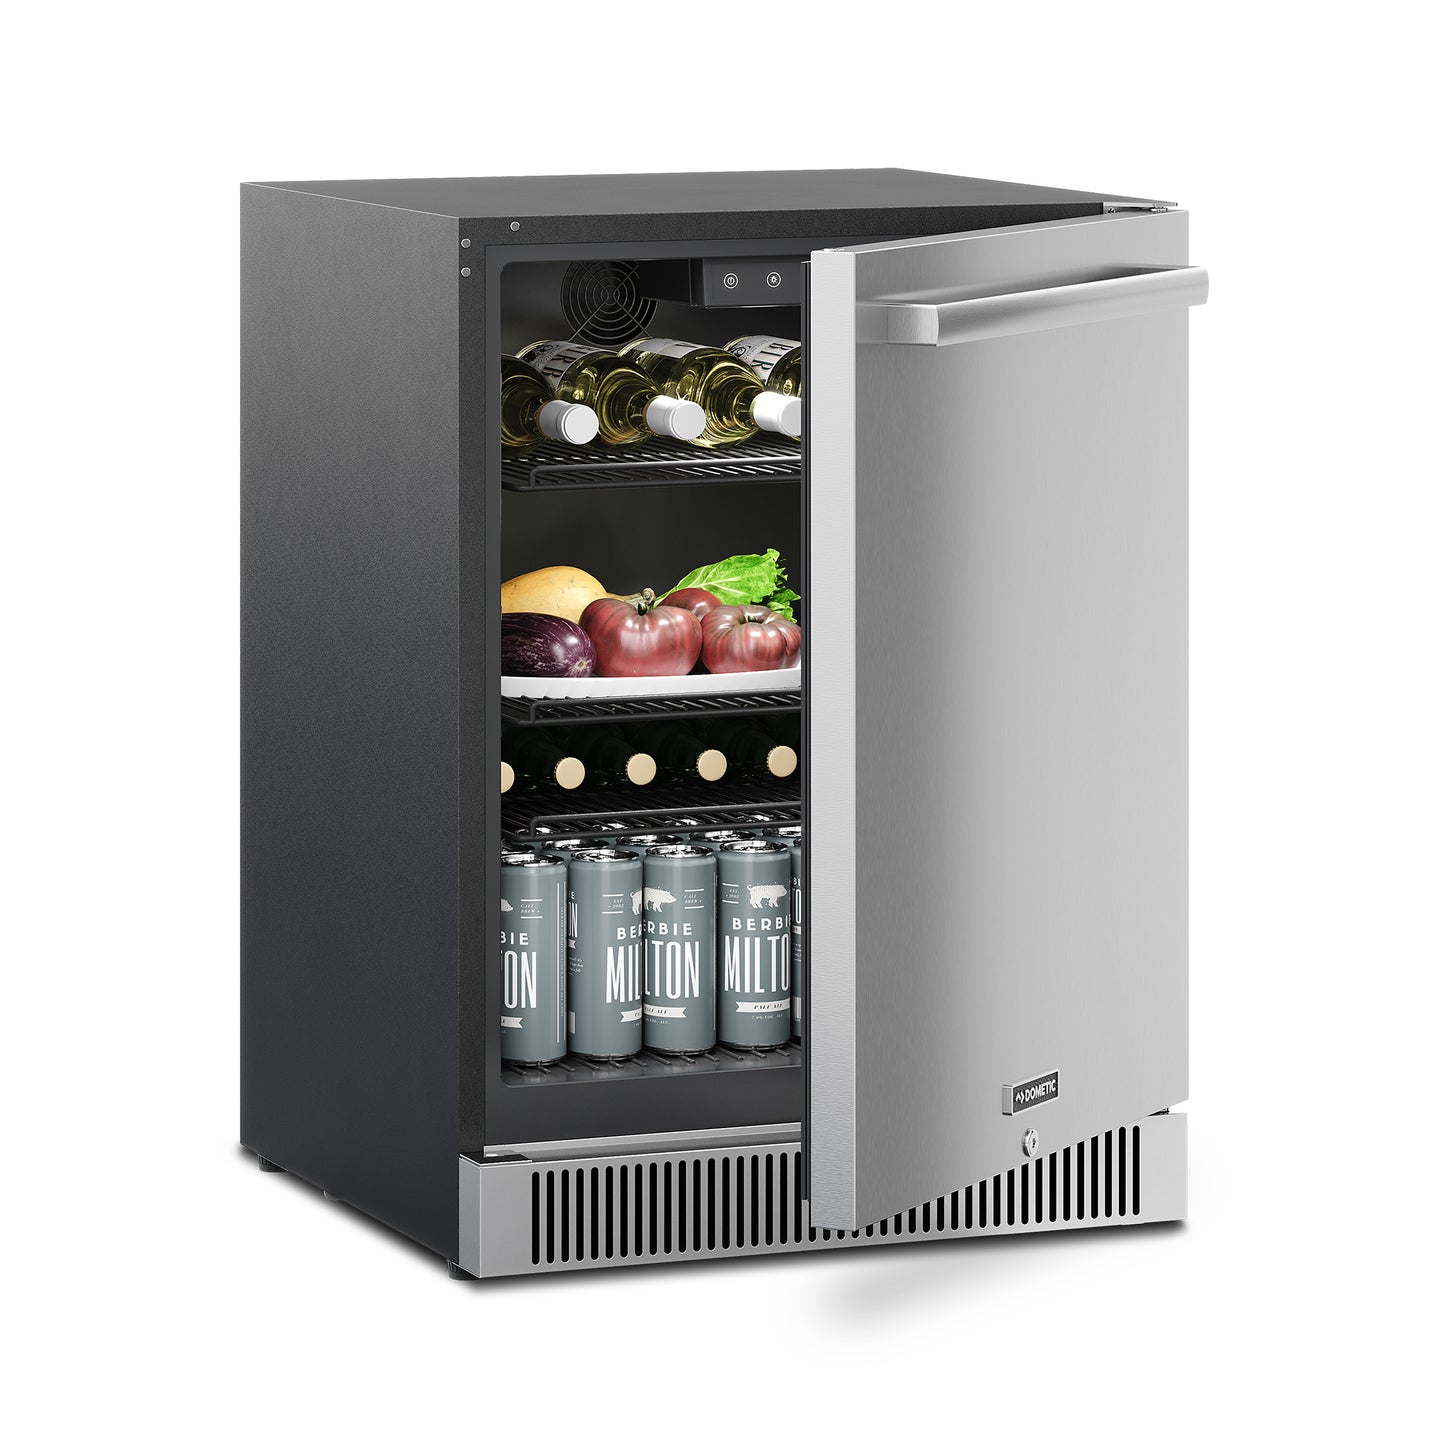 Dometic D-Series 24-Inch Refrigerator (Lock, Reversible Hinge)